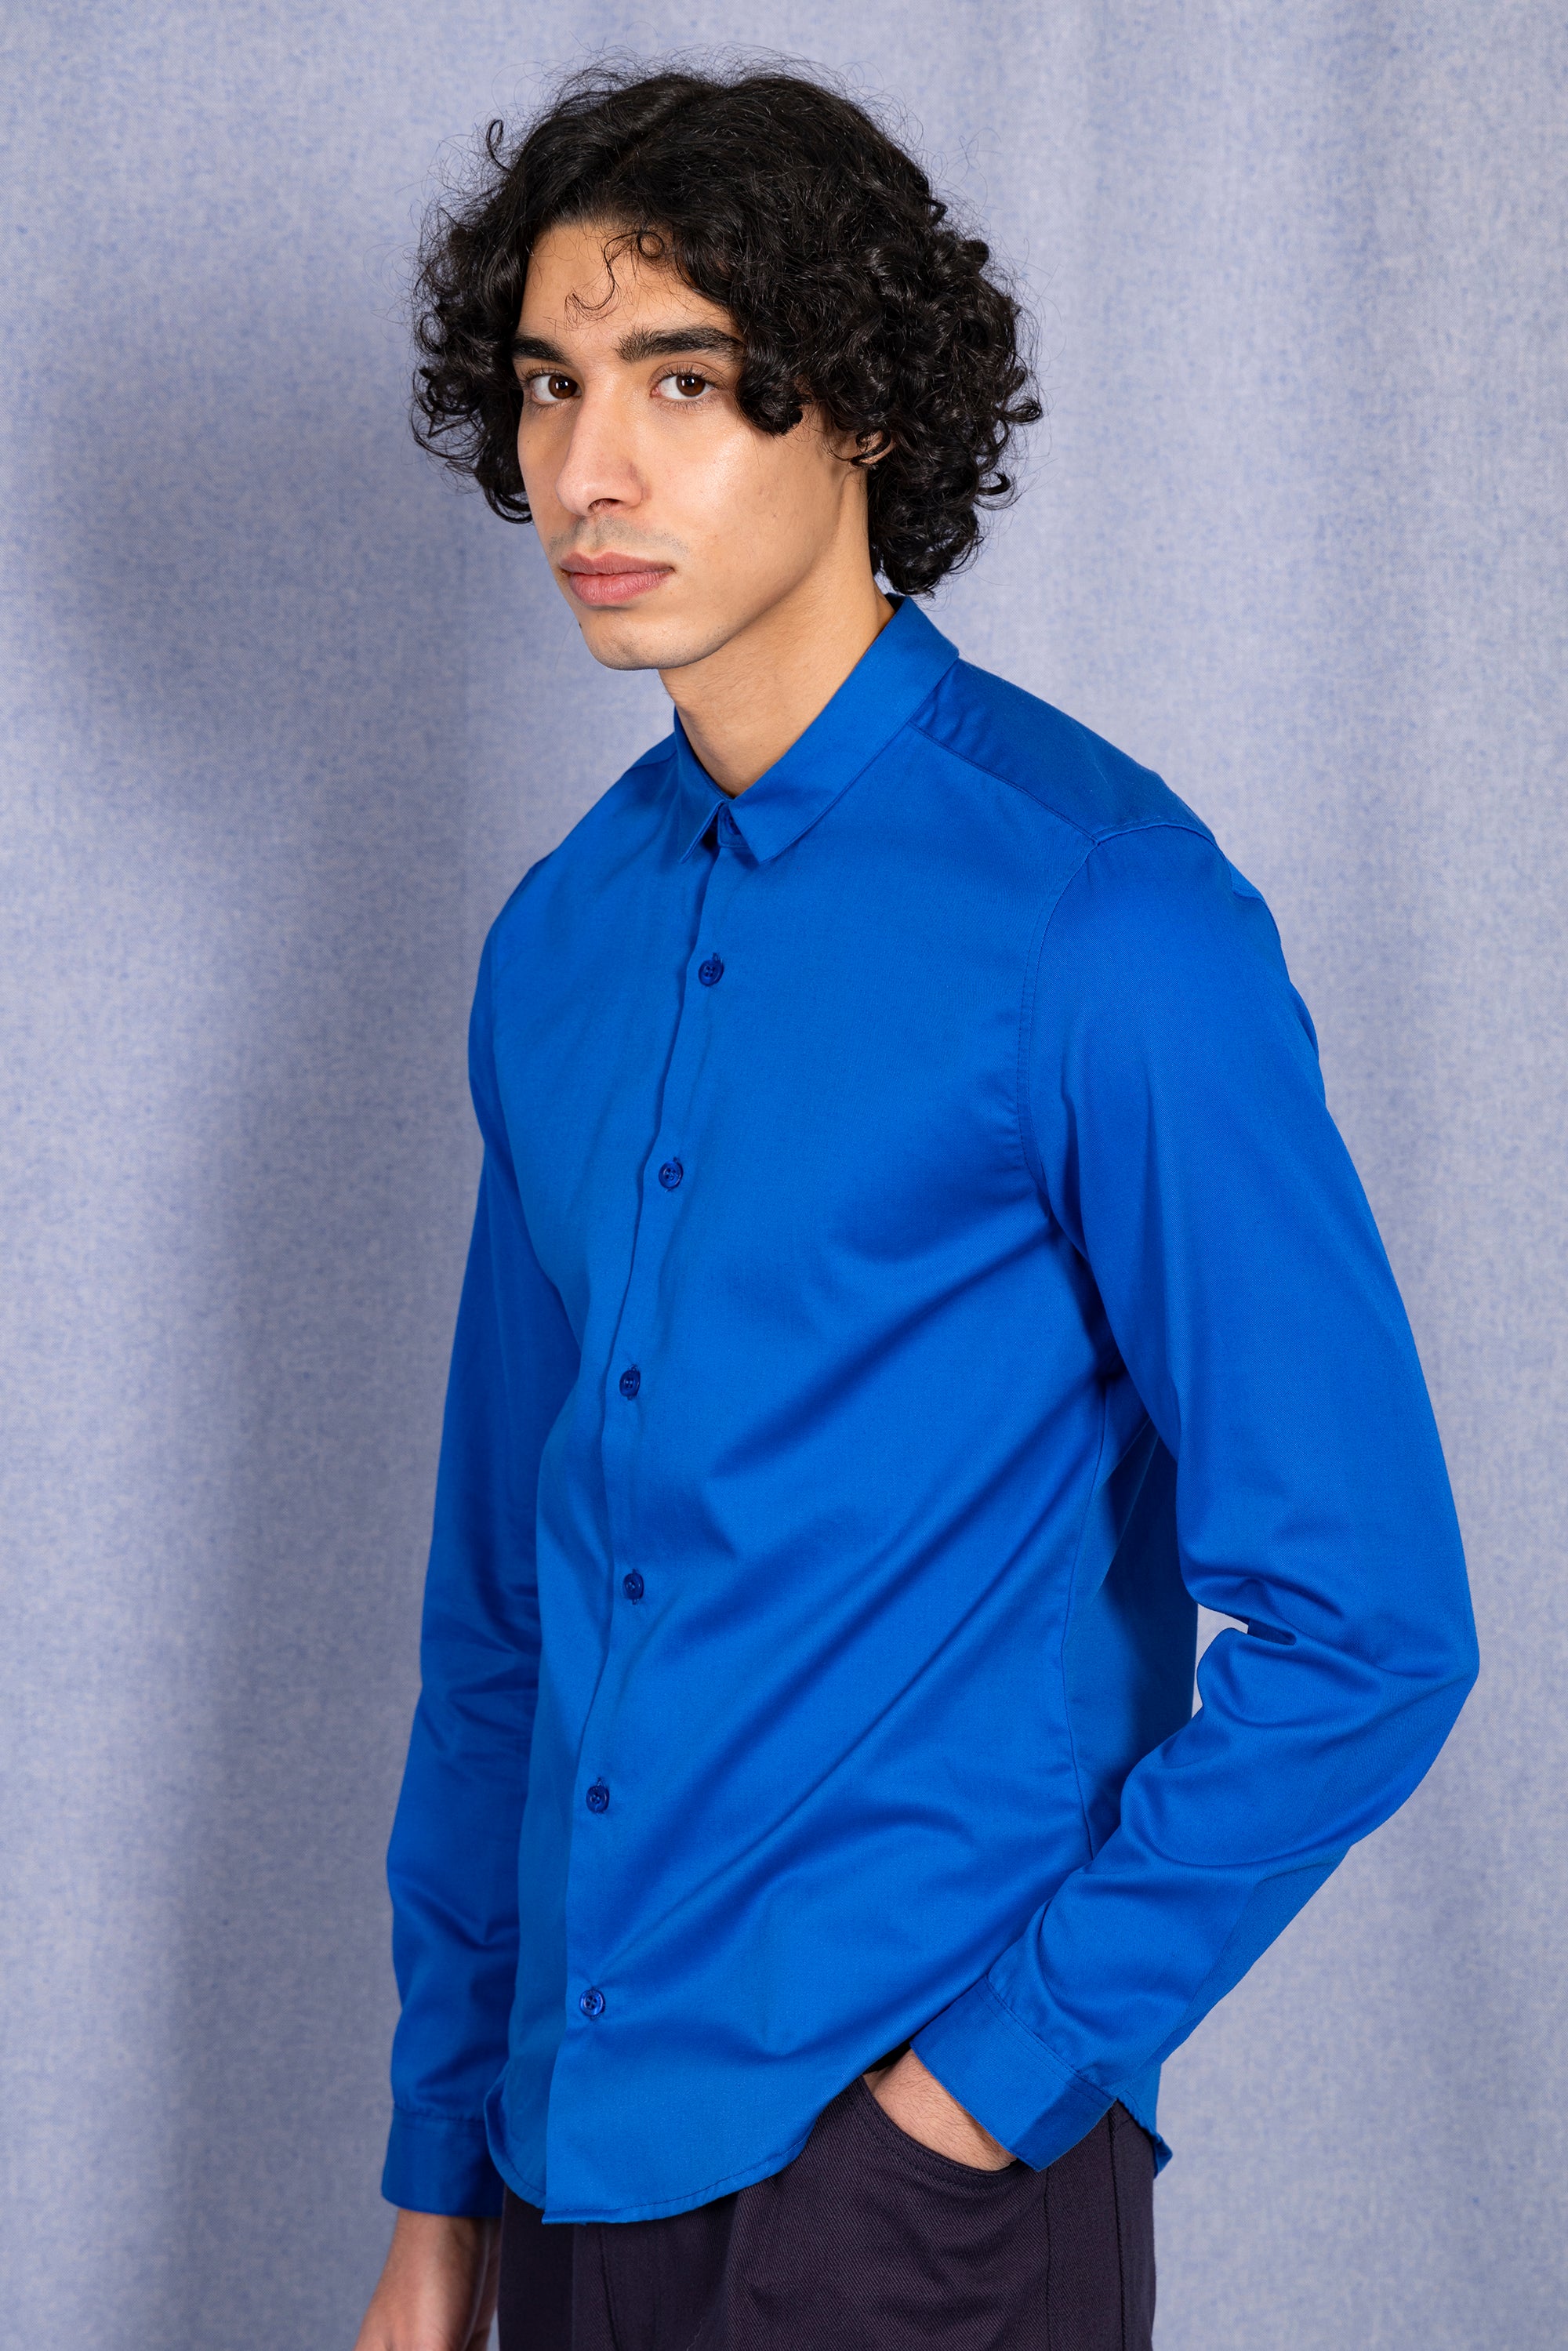 Chemise bleu saphir homme coton léger mode éthique moderne casual chic